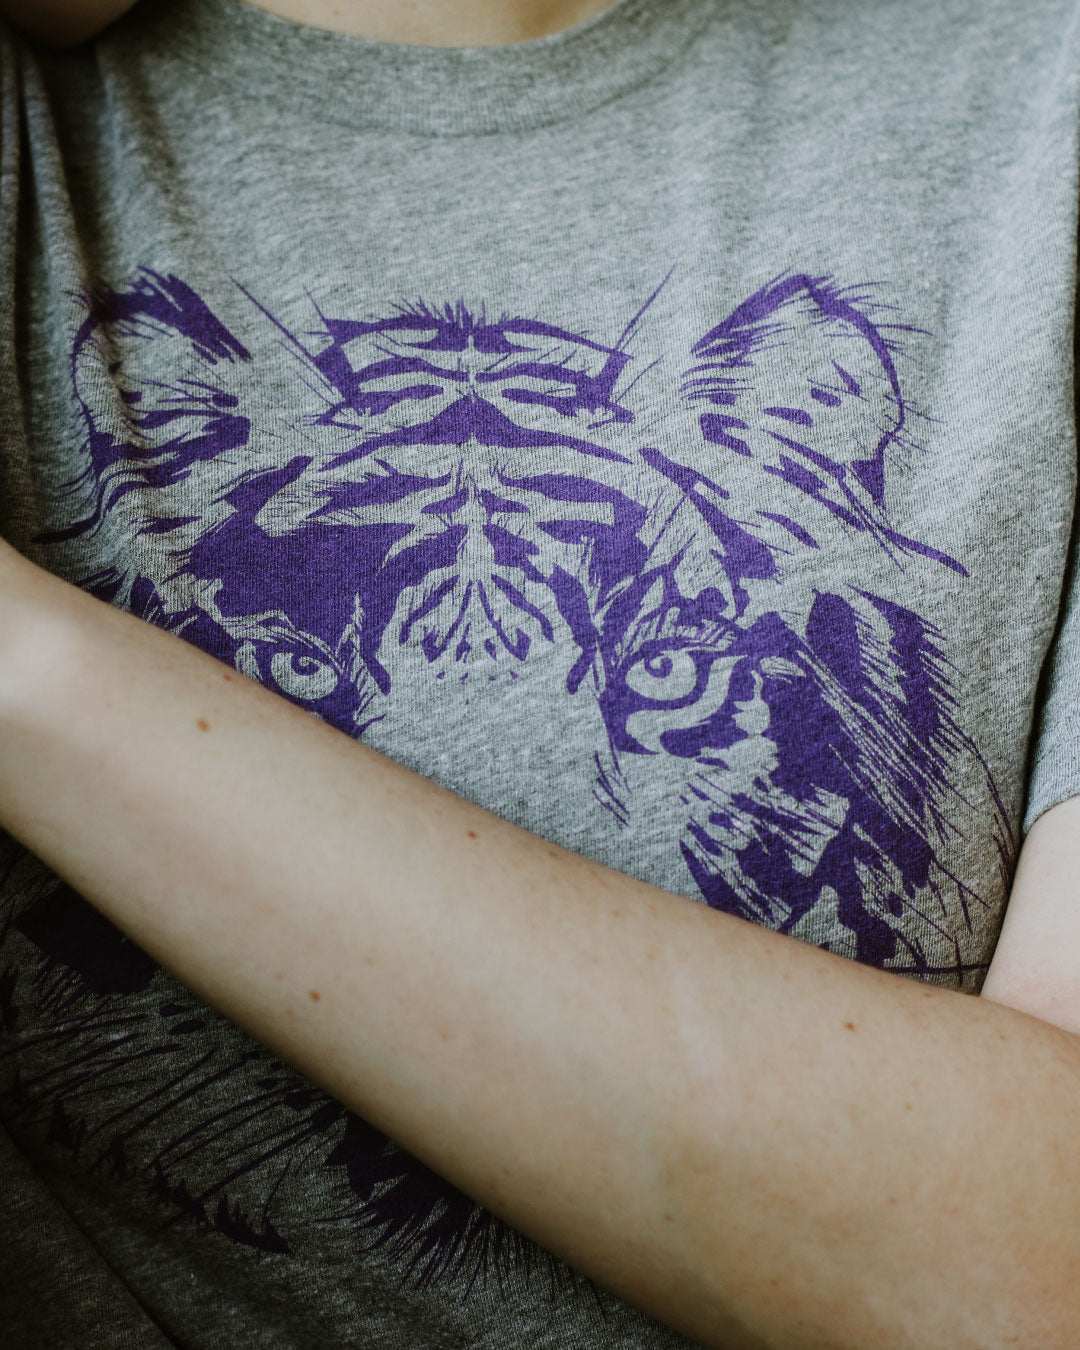 LSU Tigers T-shirt